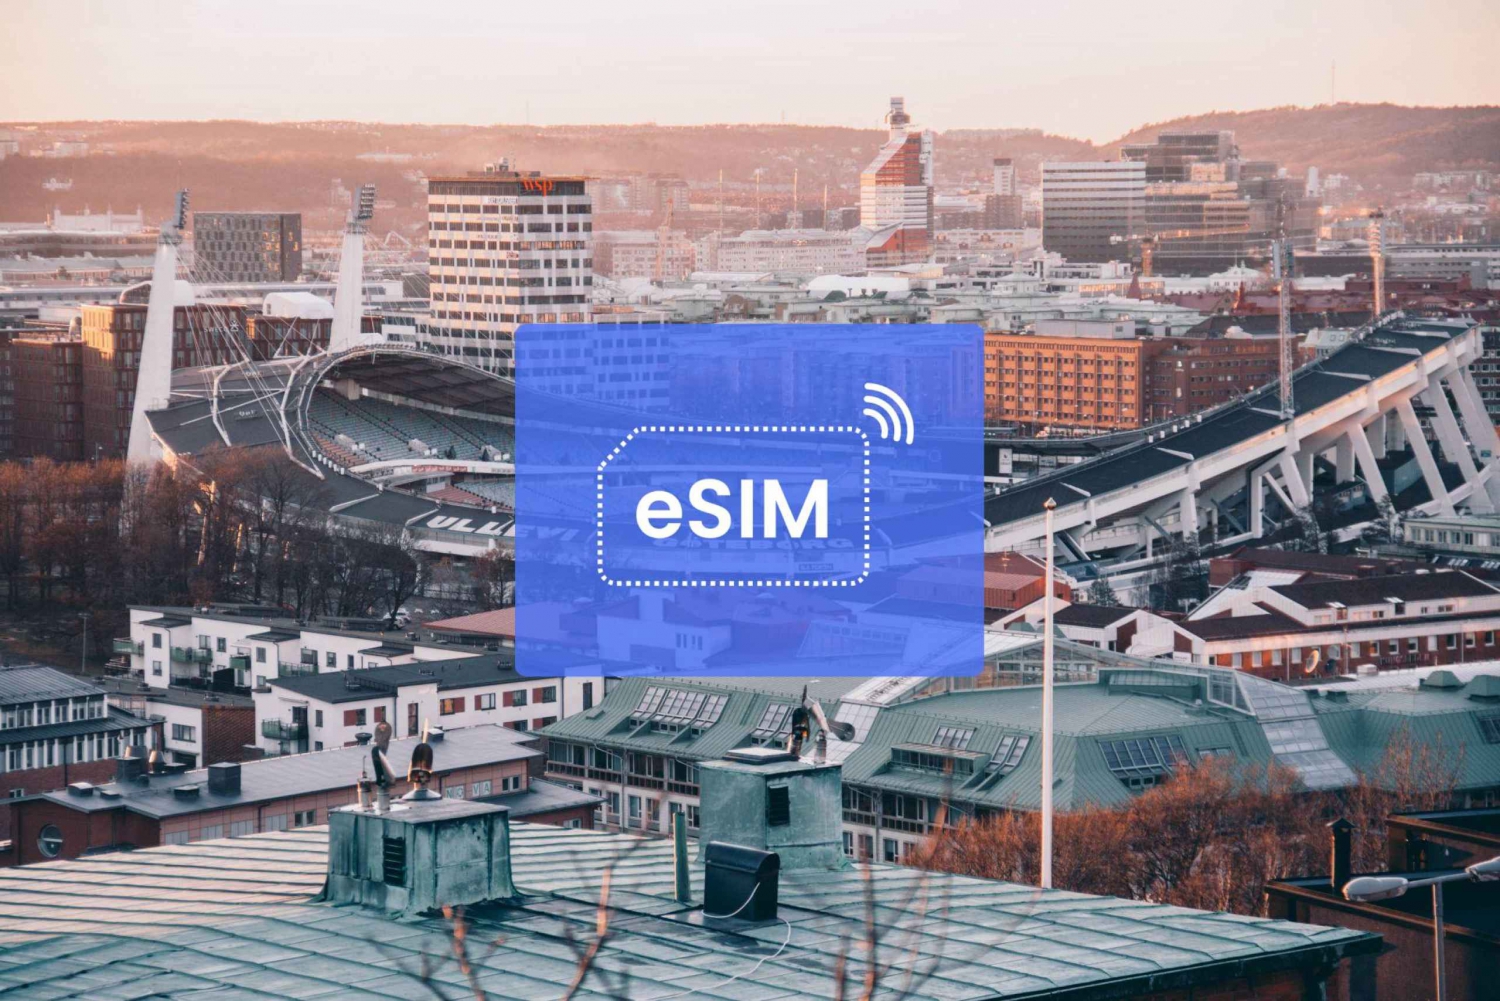 Gothenburg: Sweden/ Europe eSIM Roaming Mobile Data Plan